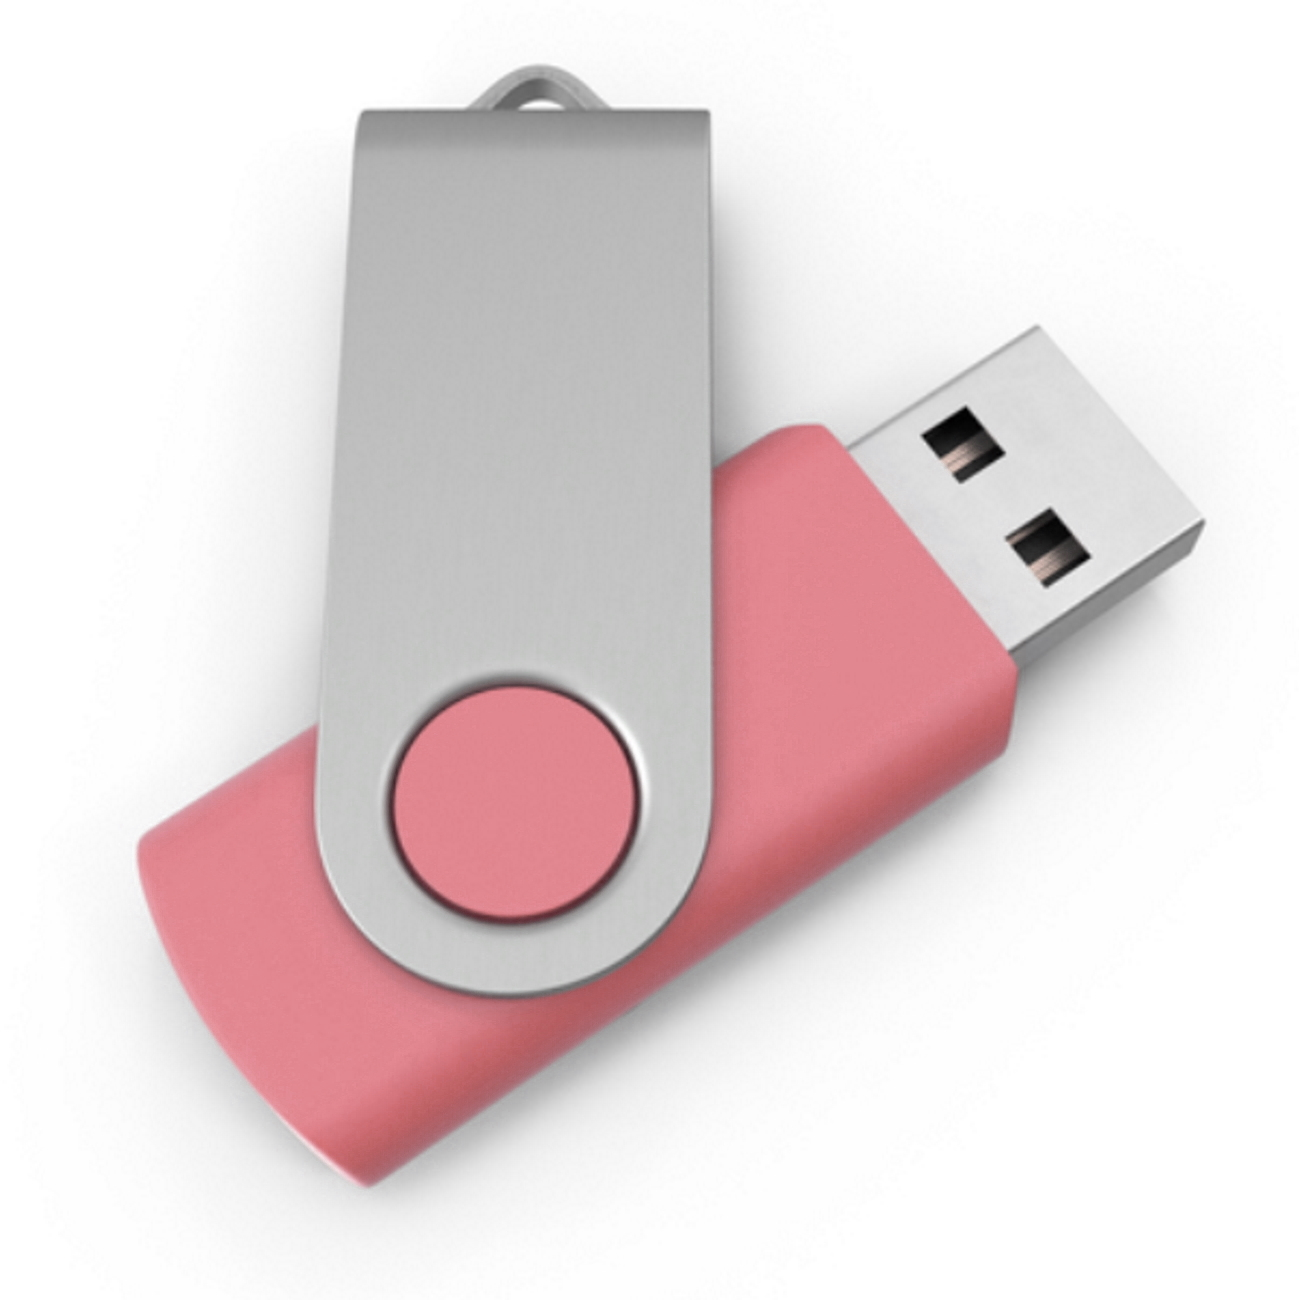 GERMANY 64 (Rosa, ® GB) USB-Stick Swivel USB